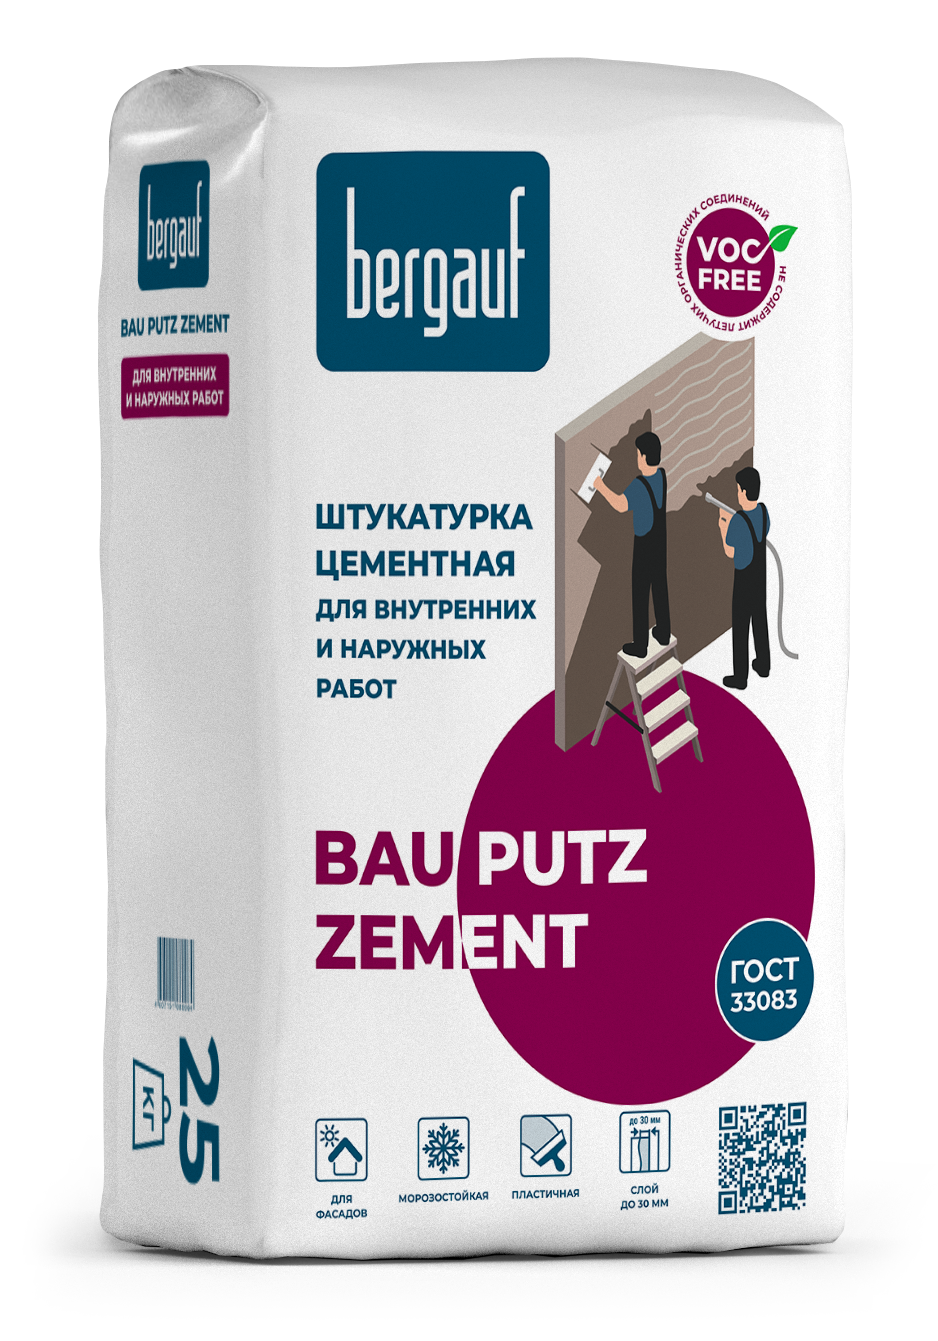 Купить Bergauf Bau Putz Zement, 25 кг